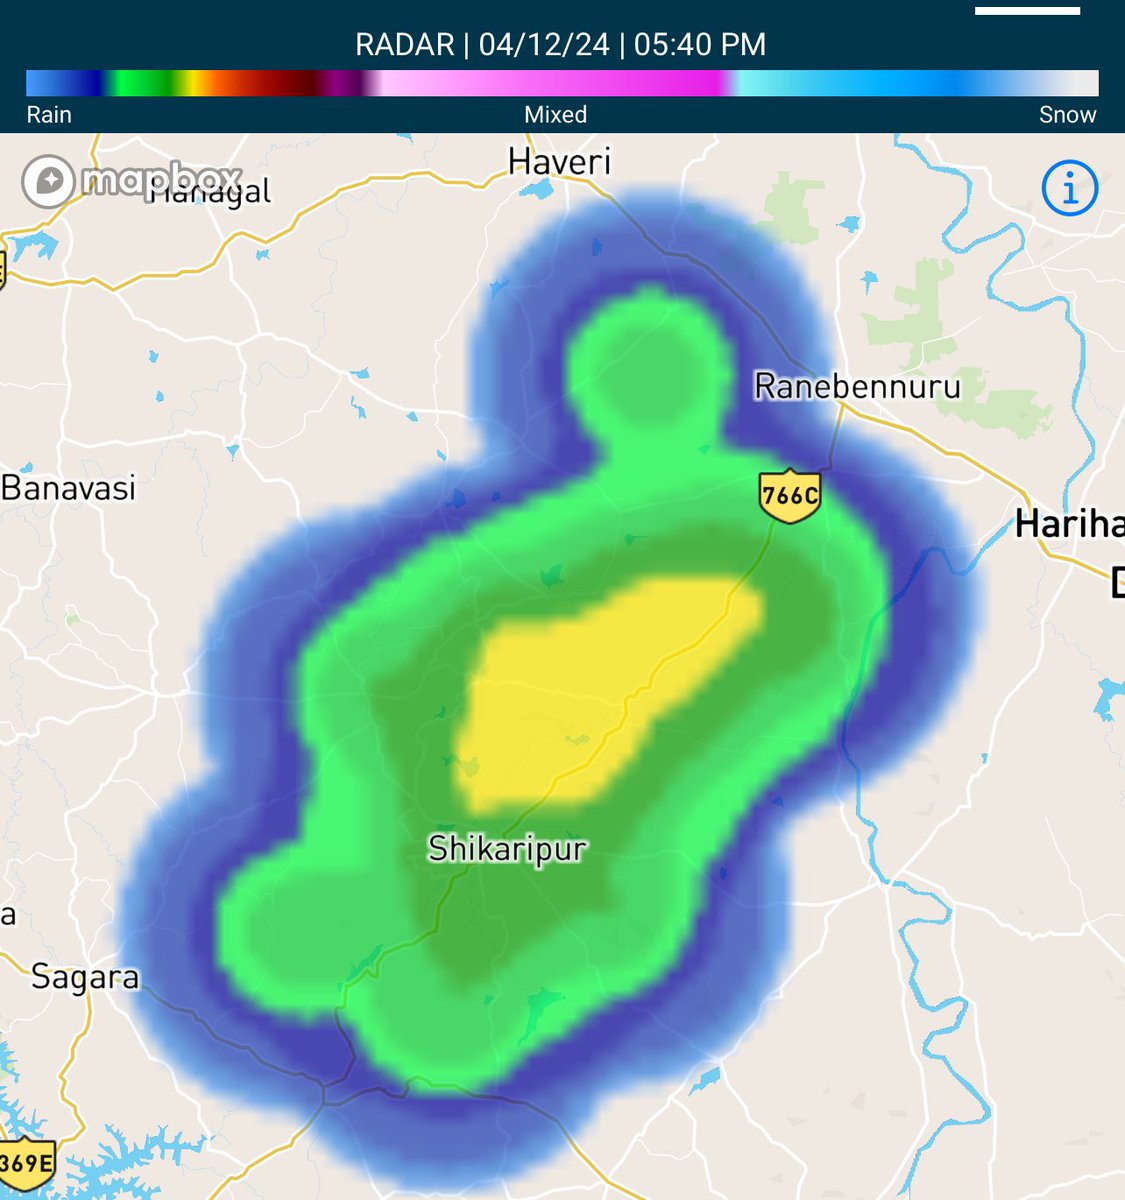 Intense storm in Shikaripura - Hirekeruru belt 🌧️⛈️
#KarnatakaRains